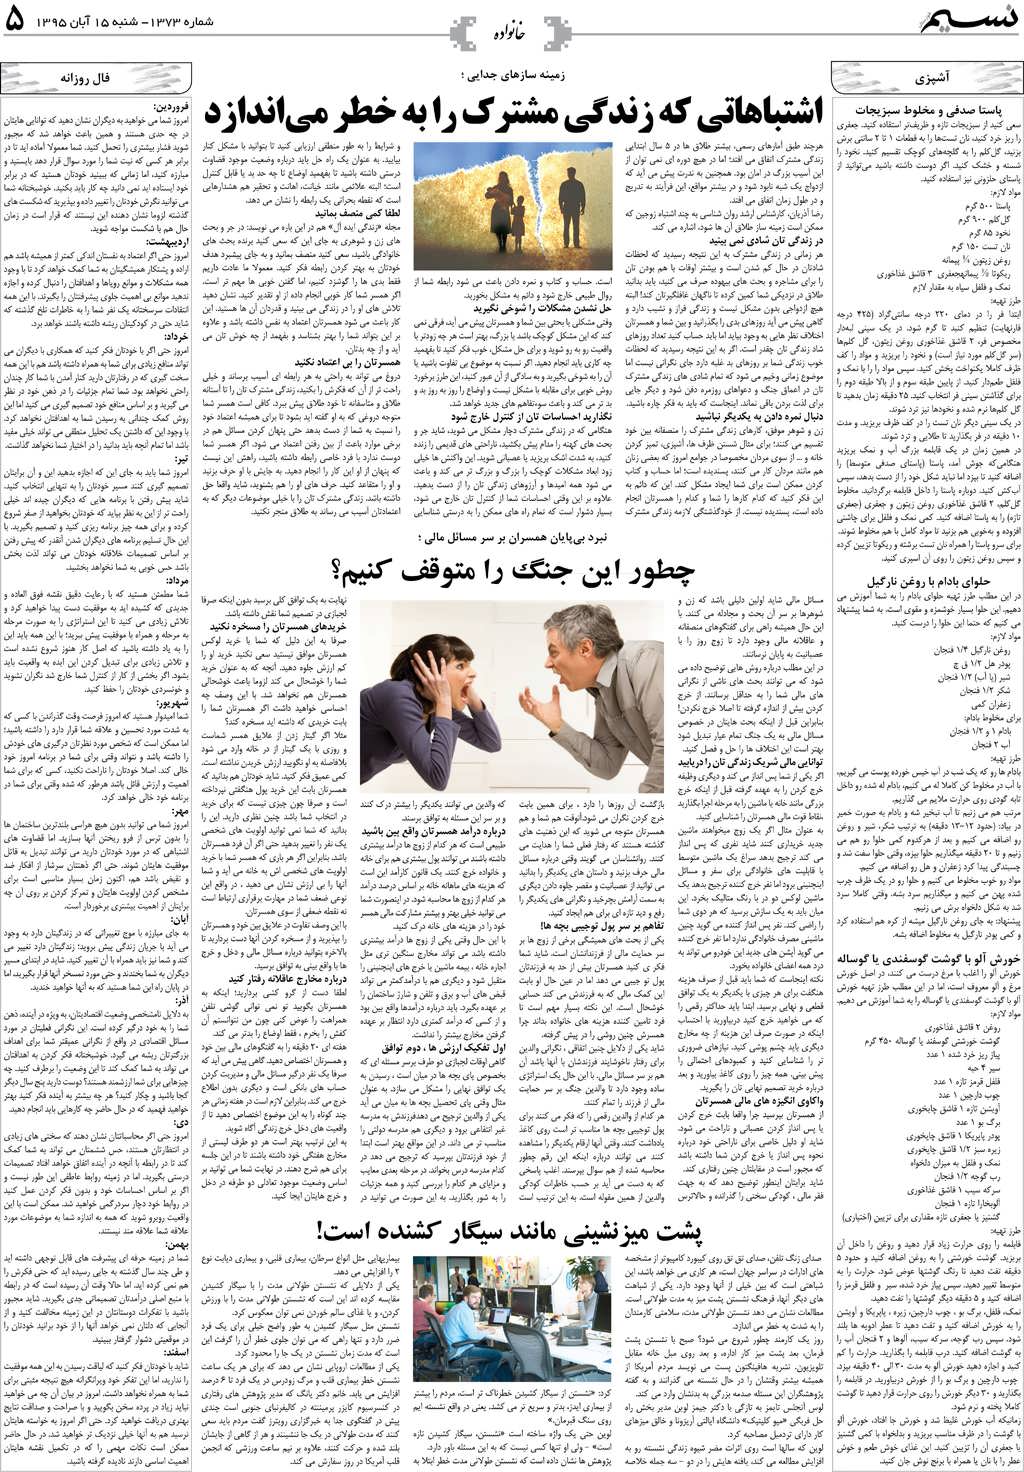 صفحه خانواده روزنامه نسیم شماره 1373